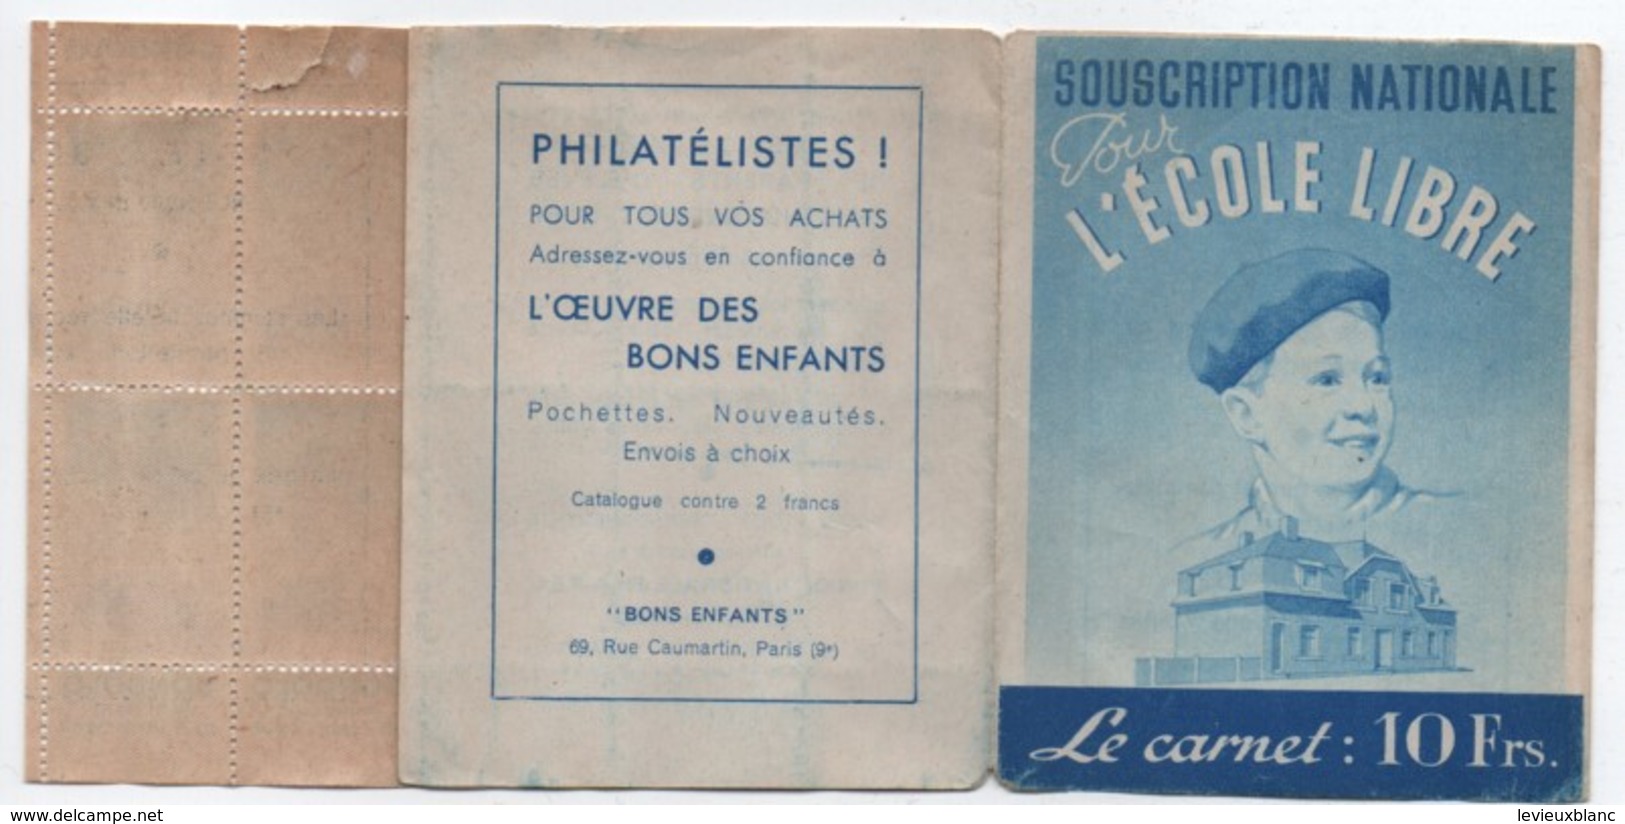 Ecole/Souscription Nationale Pour L'Ecole Libre/Le Carnet De Timbres 10 Frs/APEL/ Vers 1940 - 1950    CAH185 - Diploma & School Reports